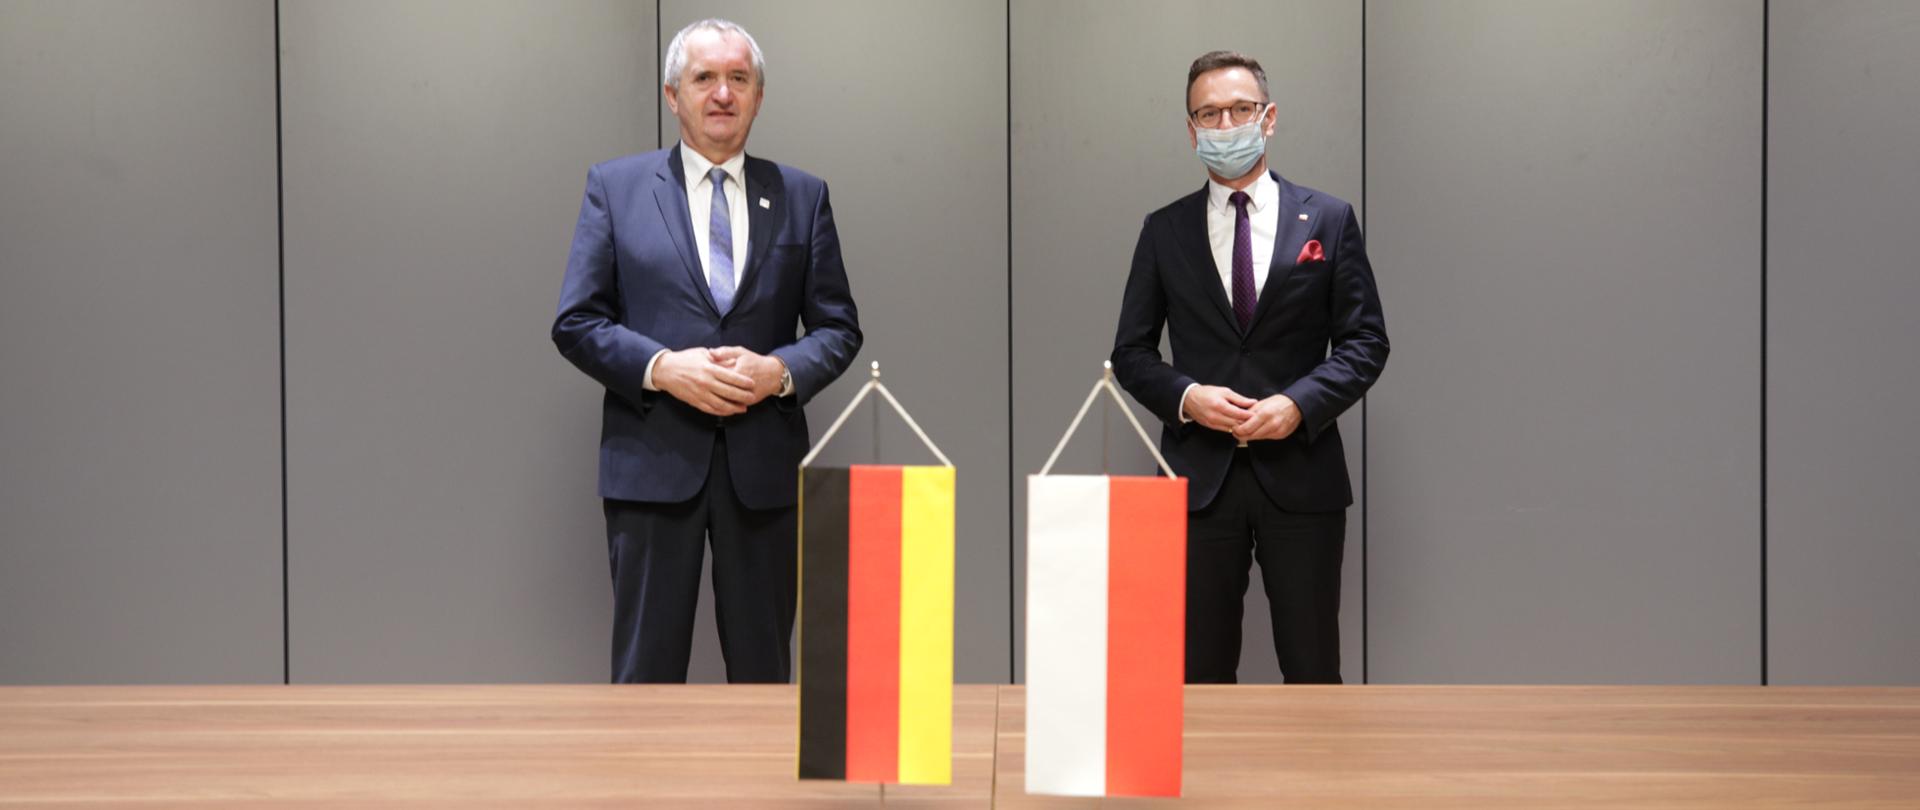 za flagami Polski i Niemiec stoją Thomas Schmidt, minister rozwoju regionalnego Saksonii, Kraju Związkowego Republiki Federalnej Niemiec i wiceminister Waldemar Buda